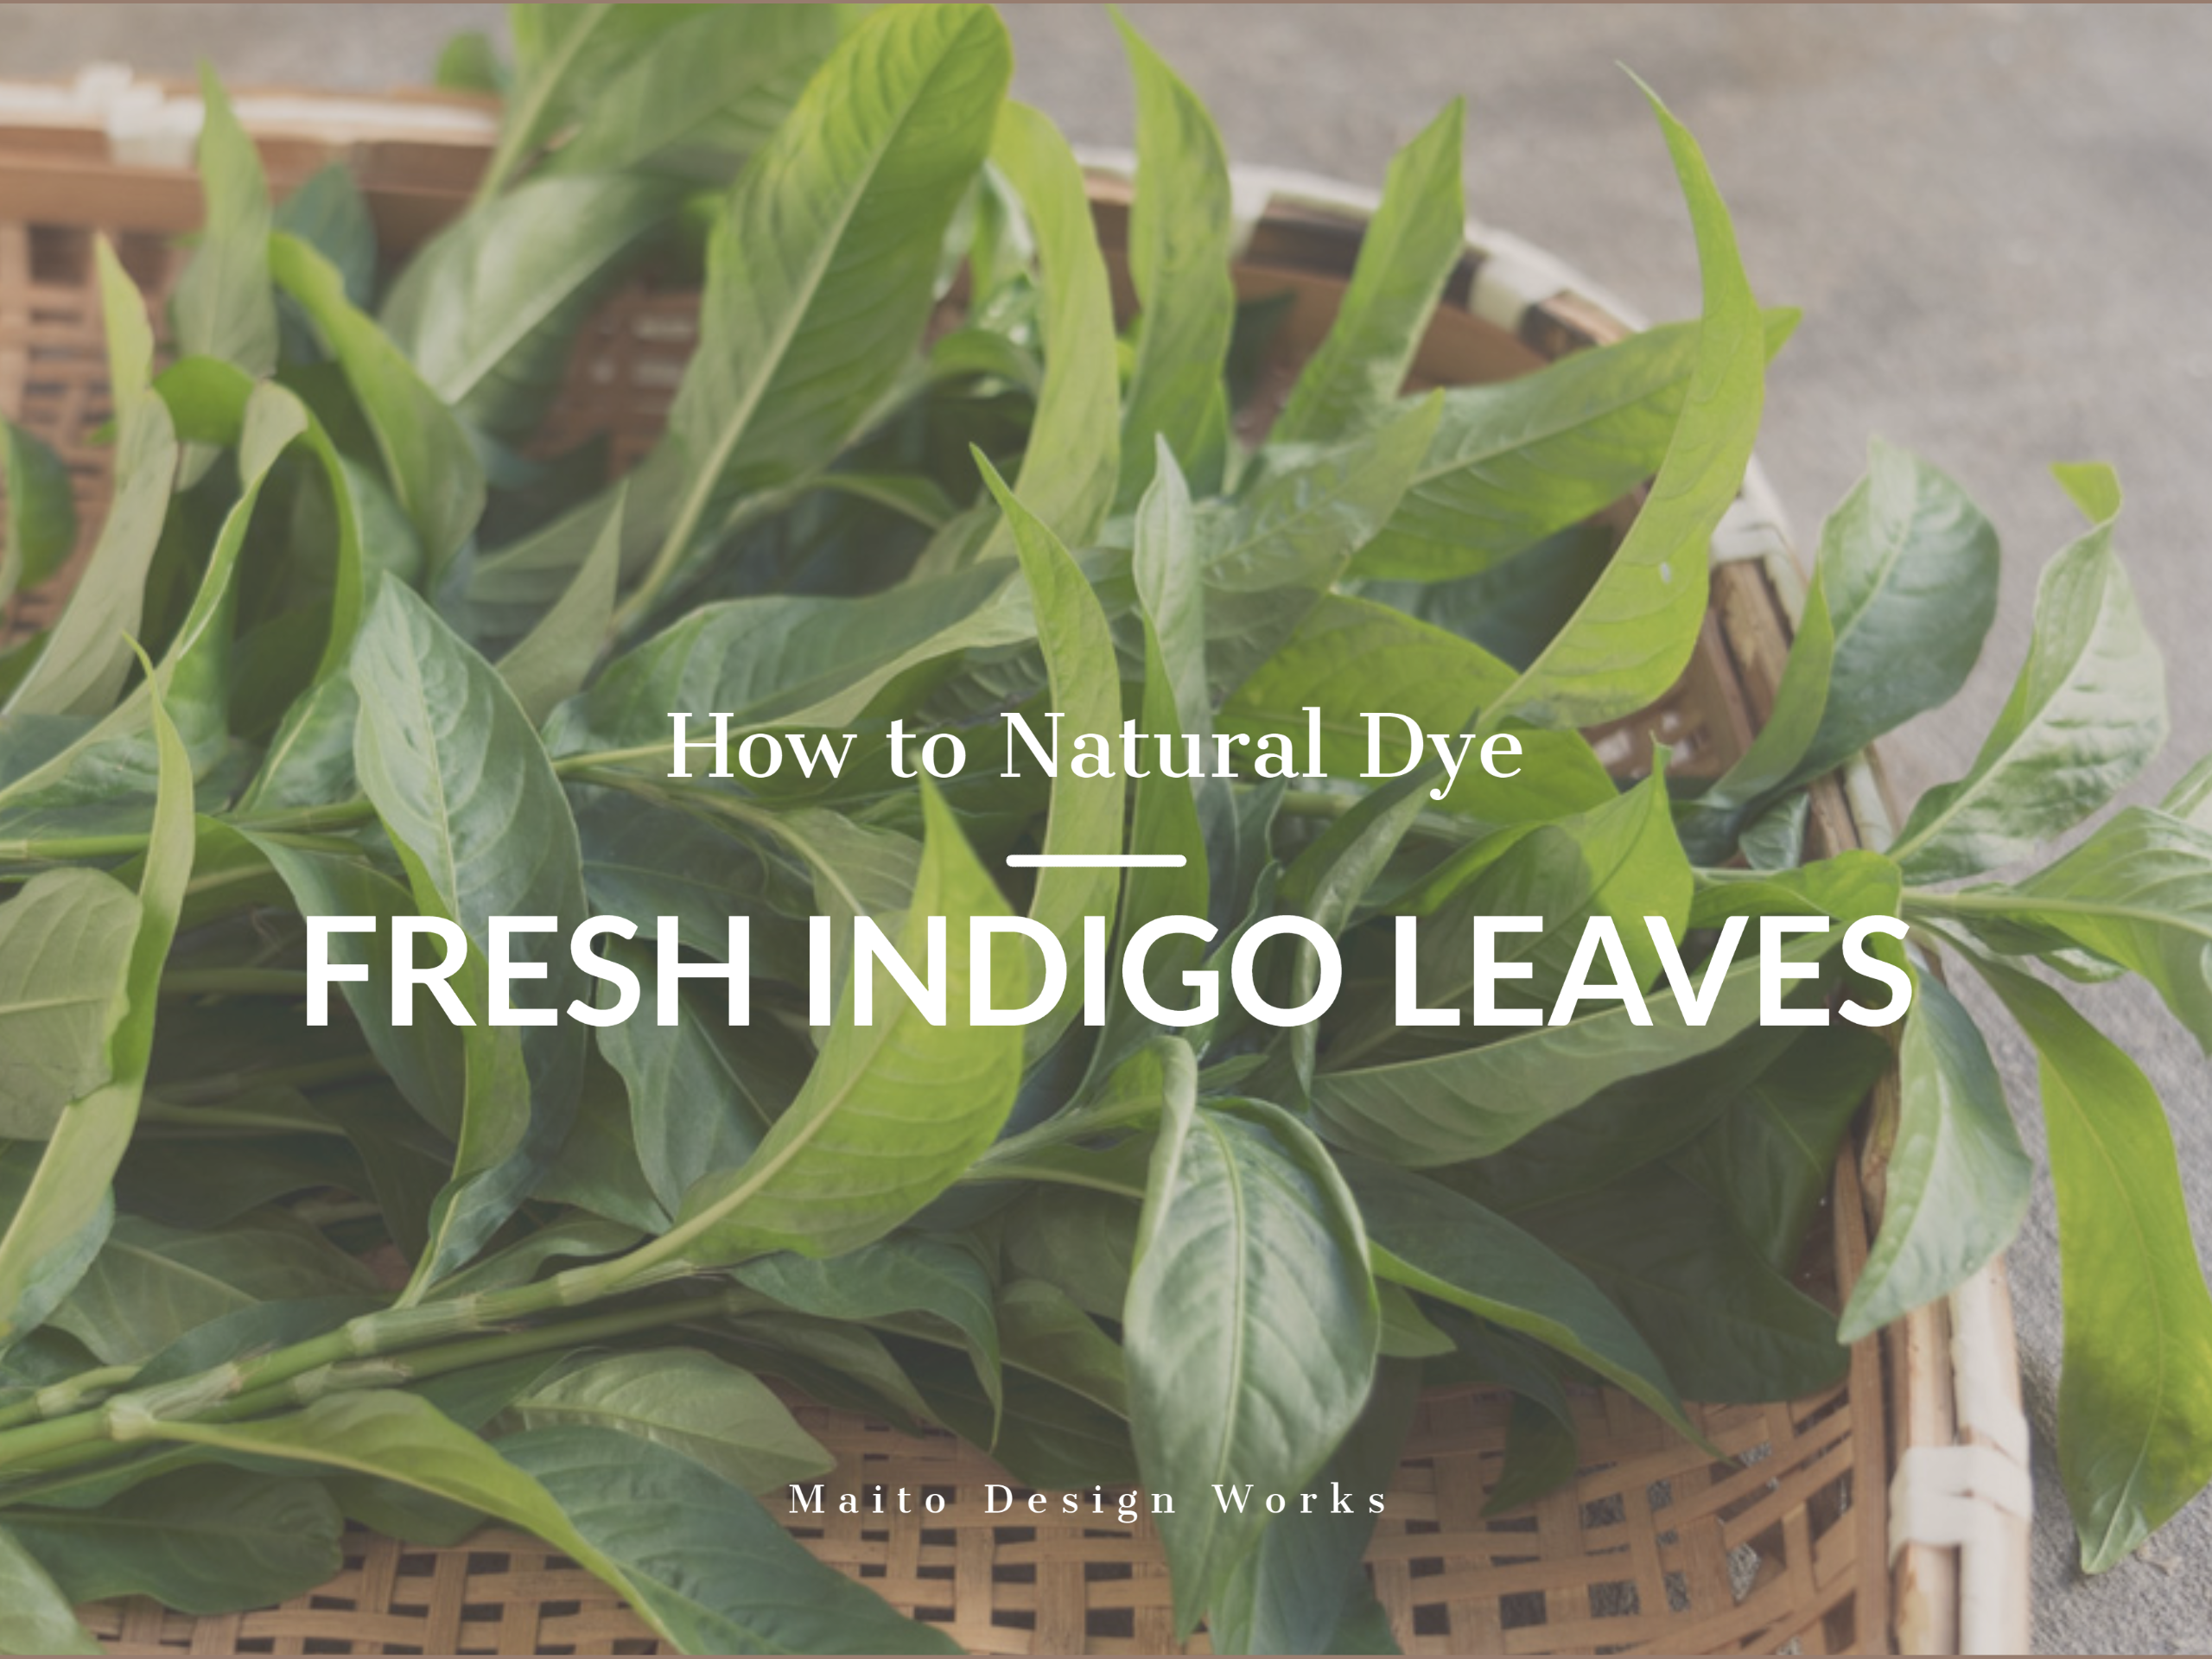 藍の生葉染めの方法 How to natural dye -Fresh indigo leaves-